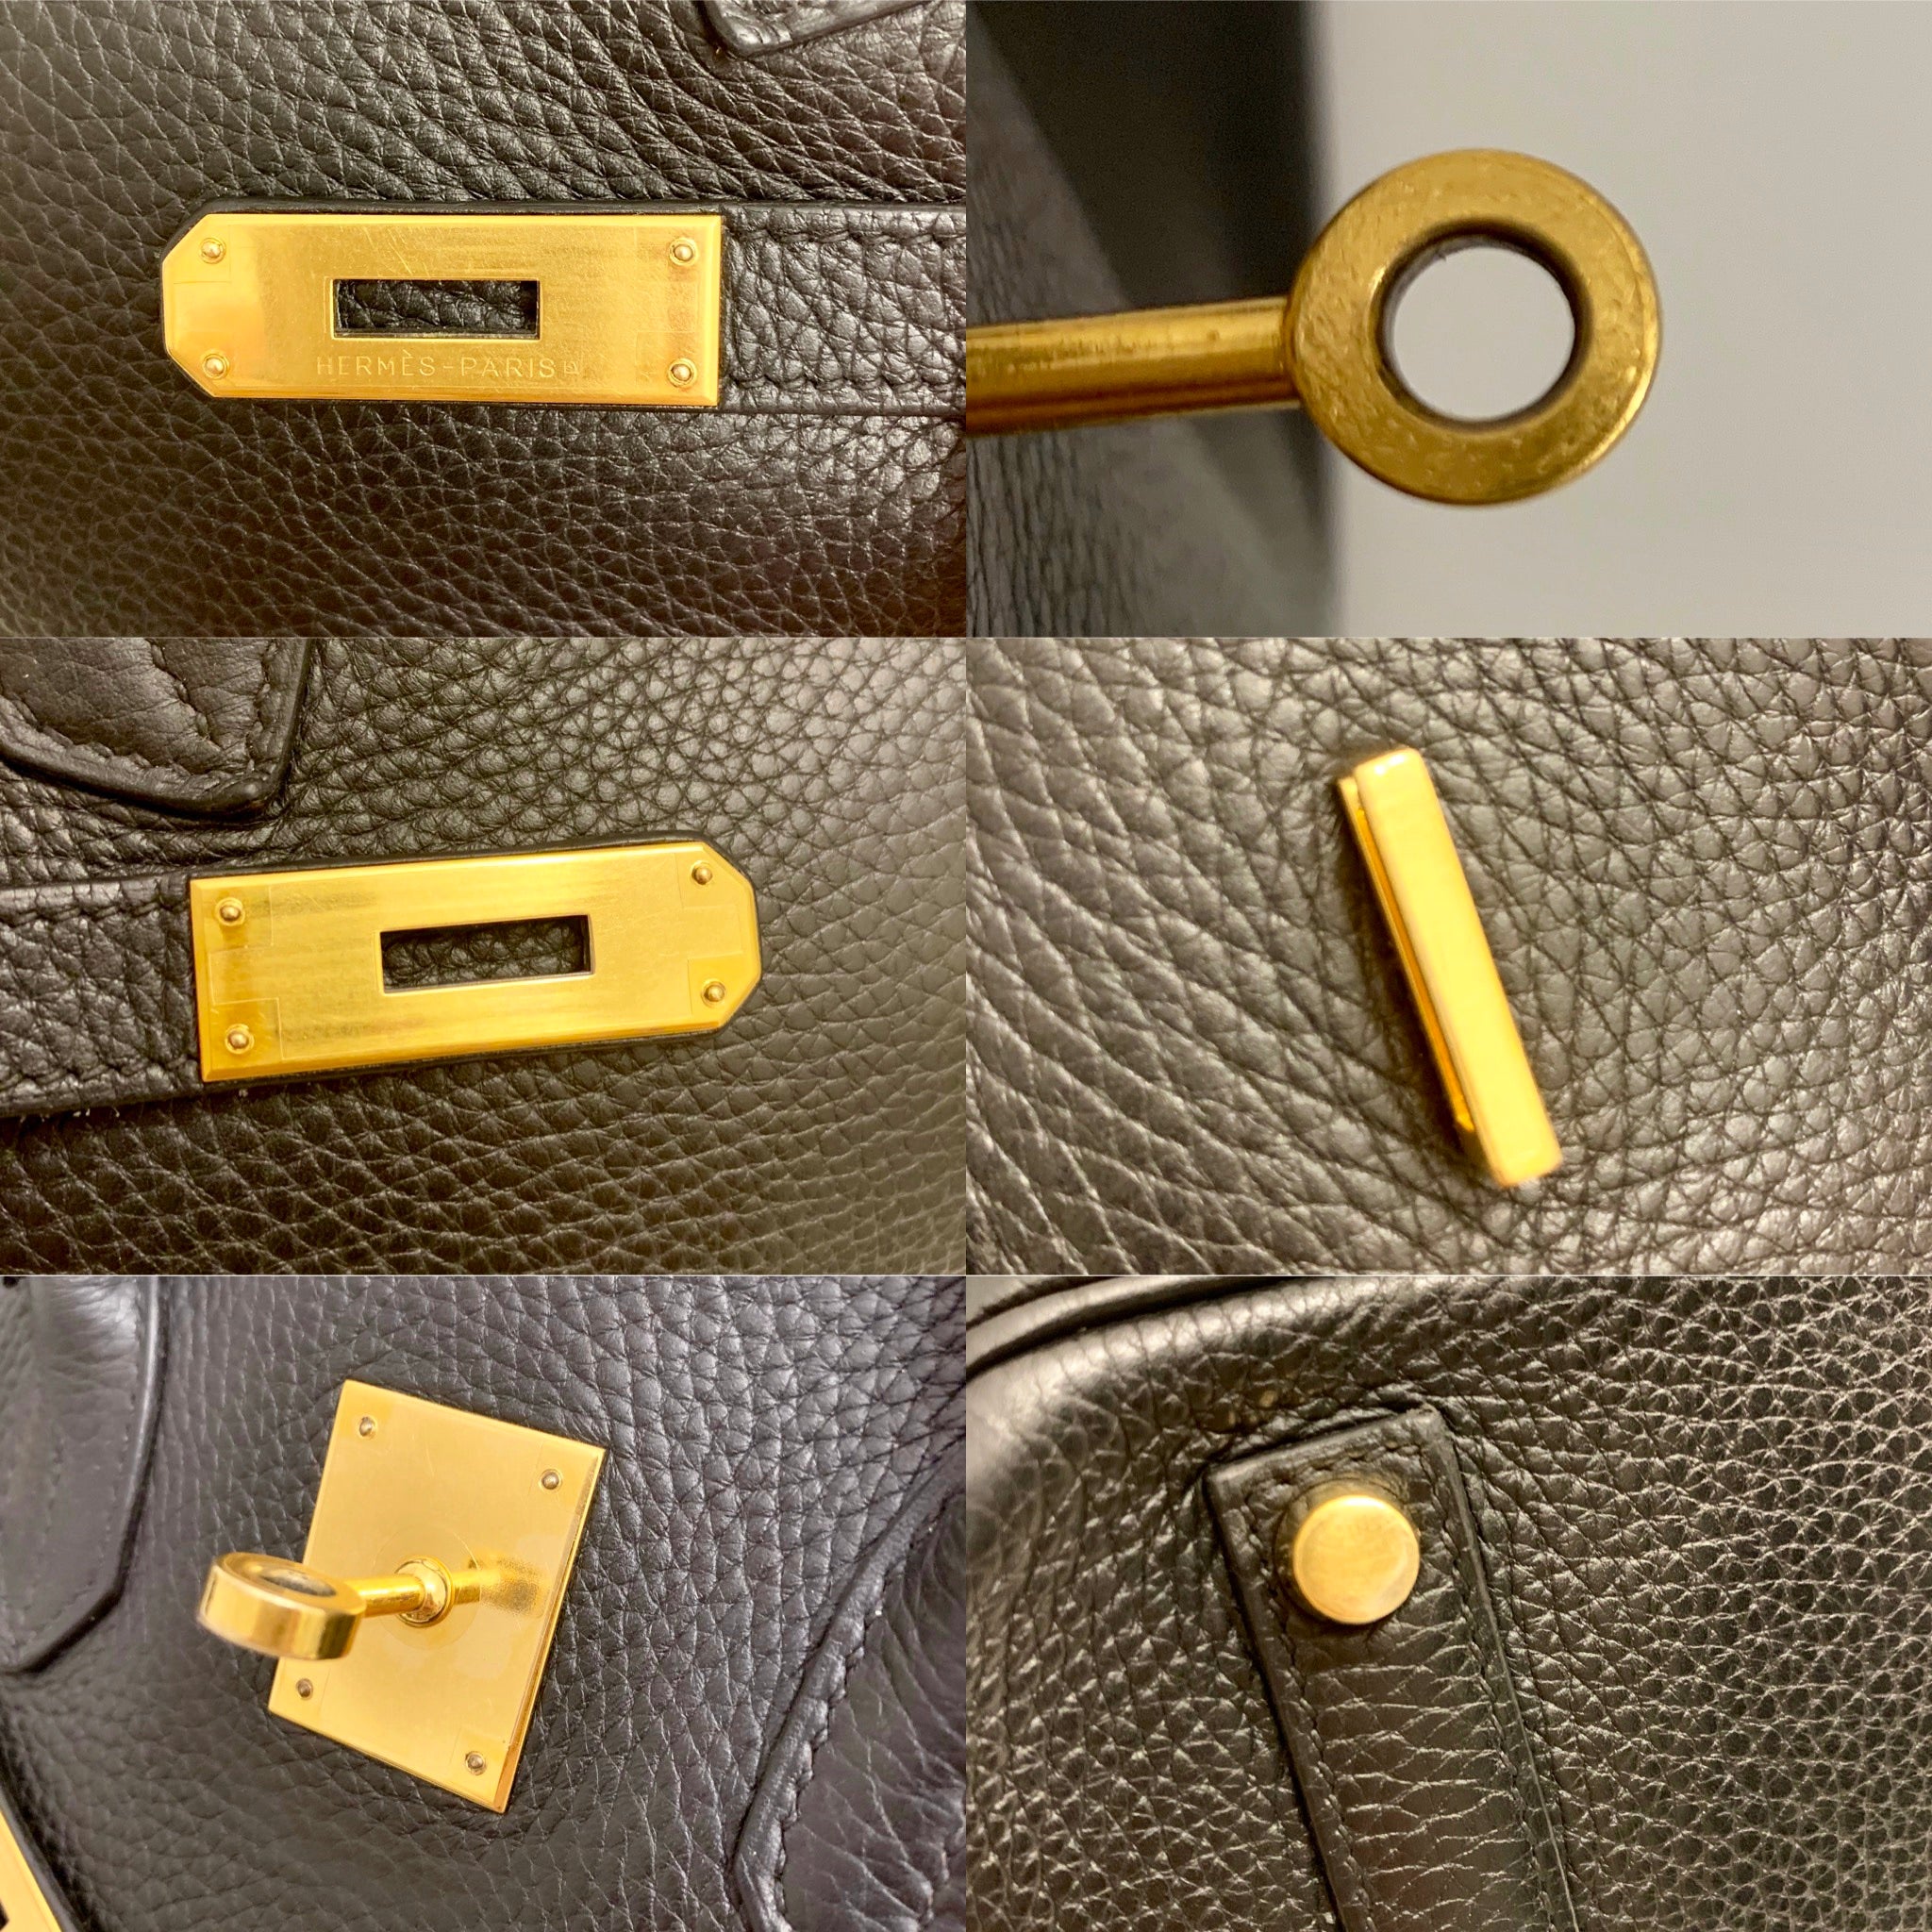 Hermès // 2014 Noir Embossed Leather & Gold Birkin 35 Bag – VSP Consignment